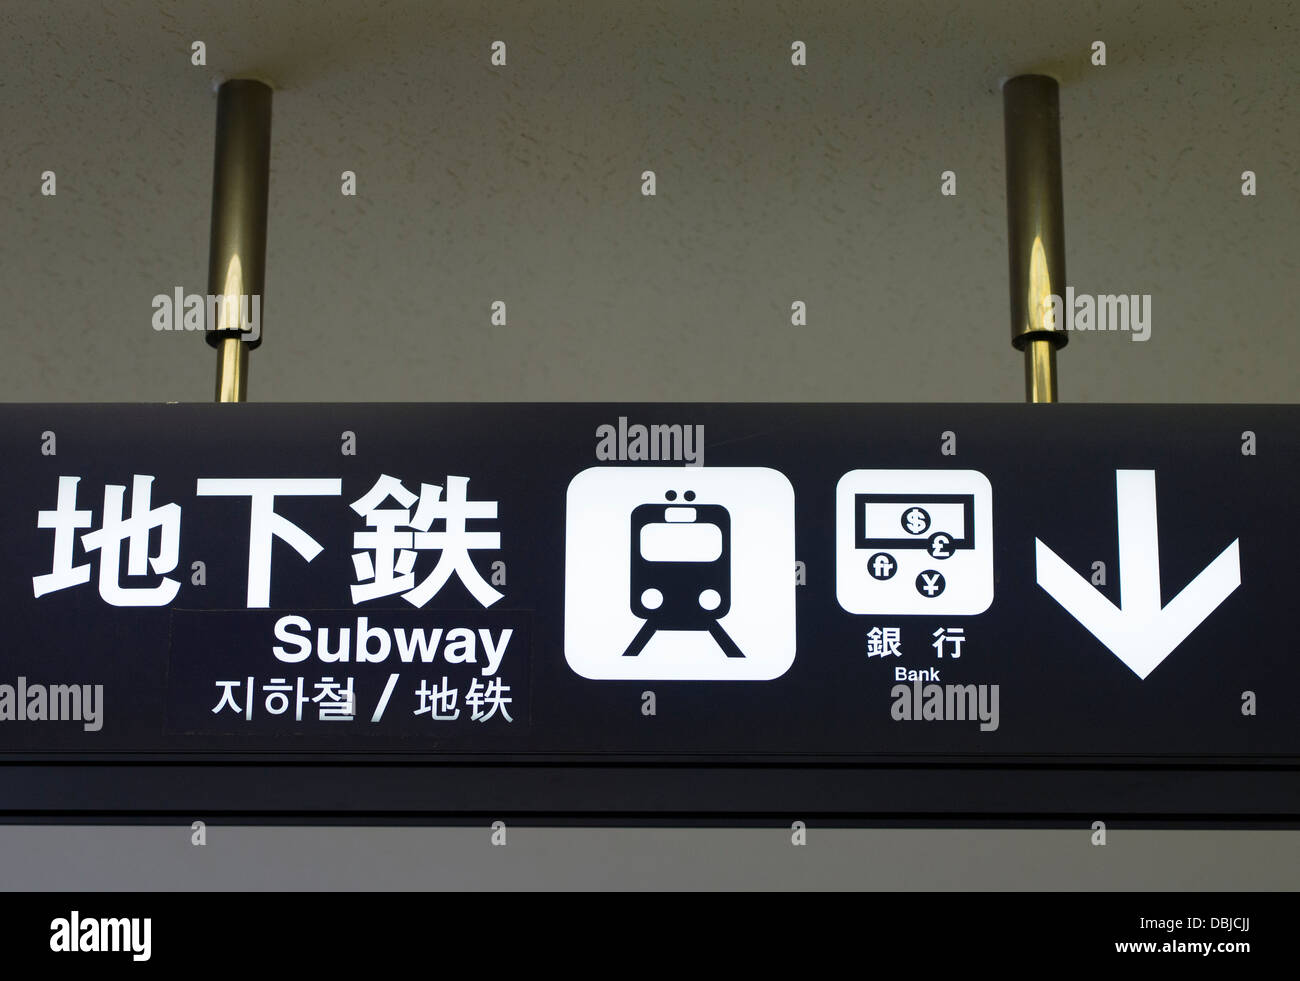 Simbolo metropolitana, Fukuoka stazione ferroviaria, Giappone con entrambe le lingue inglese e kanji anche caratteri di cinese e coreano Foto Stock